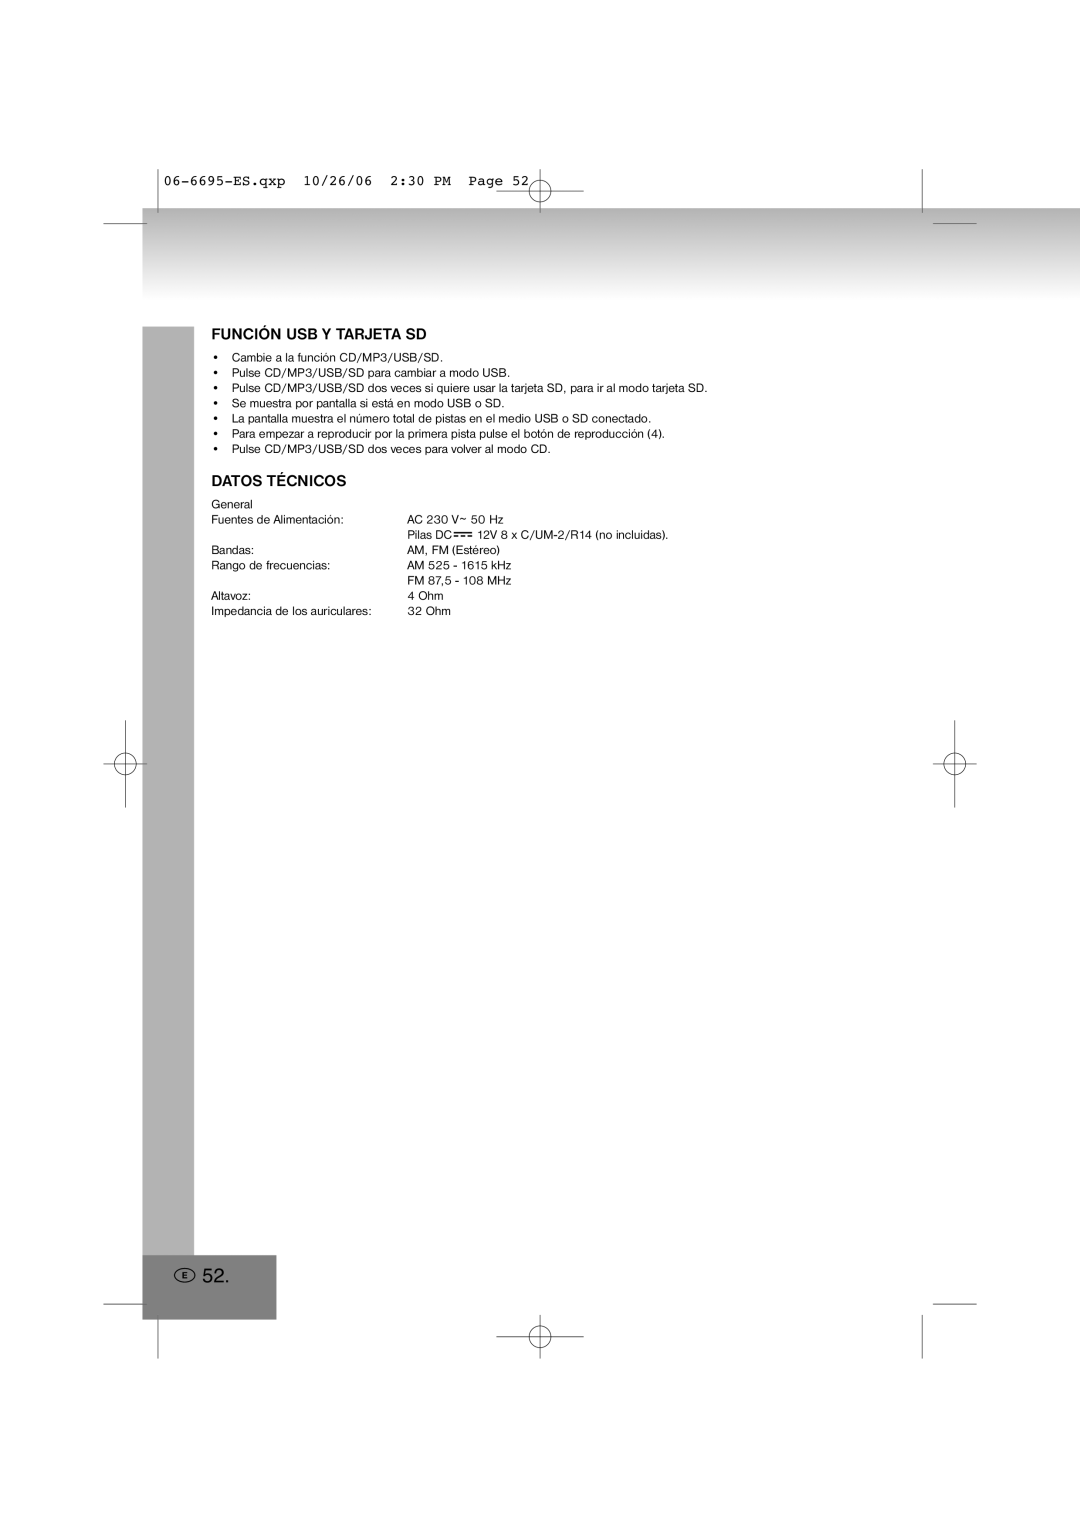 Elta manual Función Usb Y Tarjeta Sd, Datos Técnicos, 06-6695-ES.qxp10/26/06 2 30 PM Page 